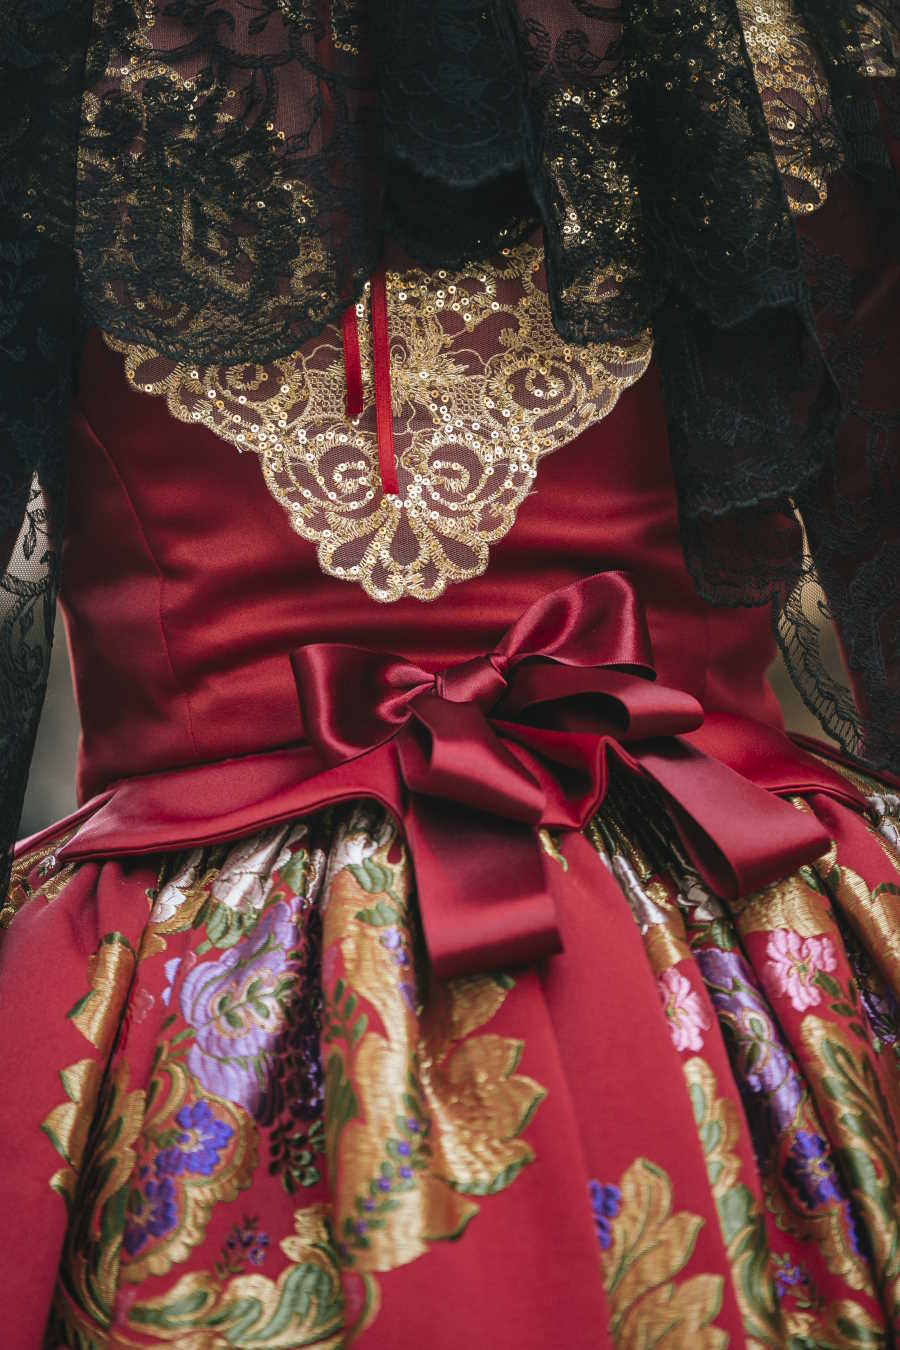 Los trajes de fallera se elaboran con las mejores sedas. La tela que se utiliza se llama espolín y está confeccionada de forma artesanal